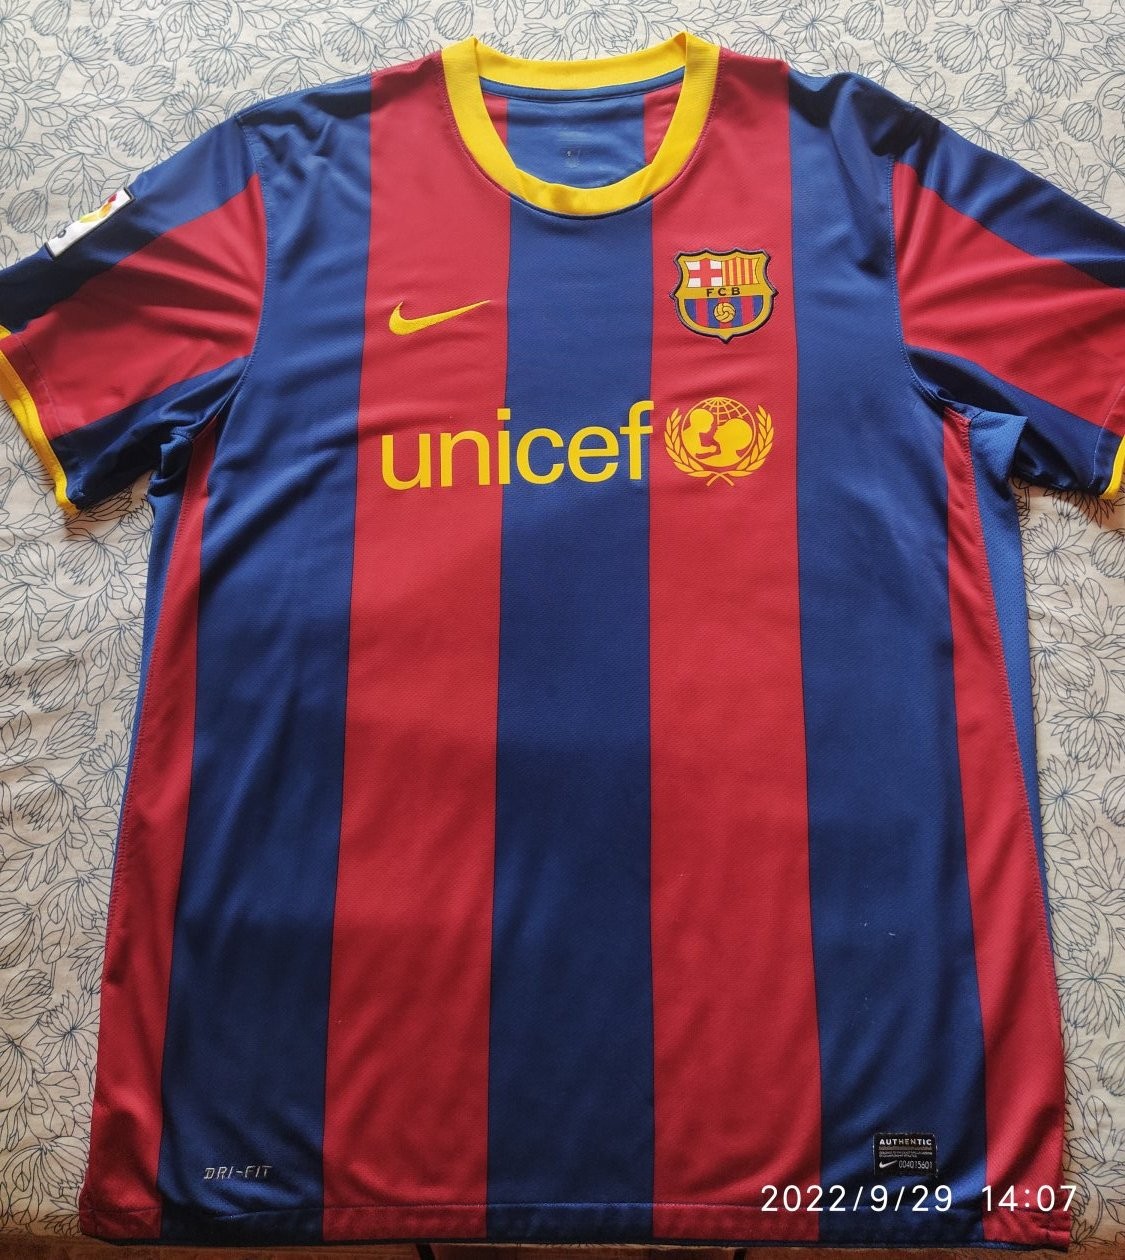 Barcelona Home maglia di calcio 2010 - 2011.